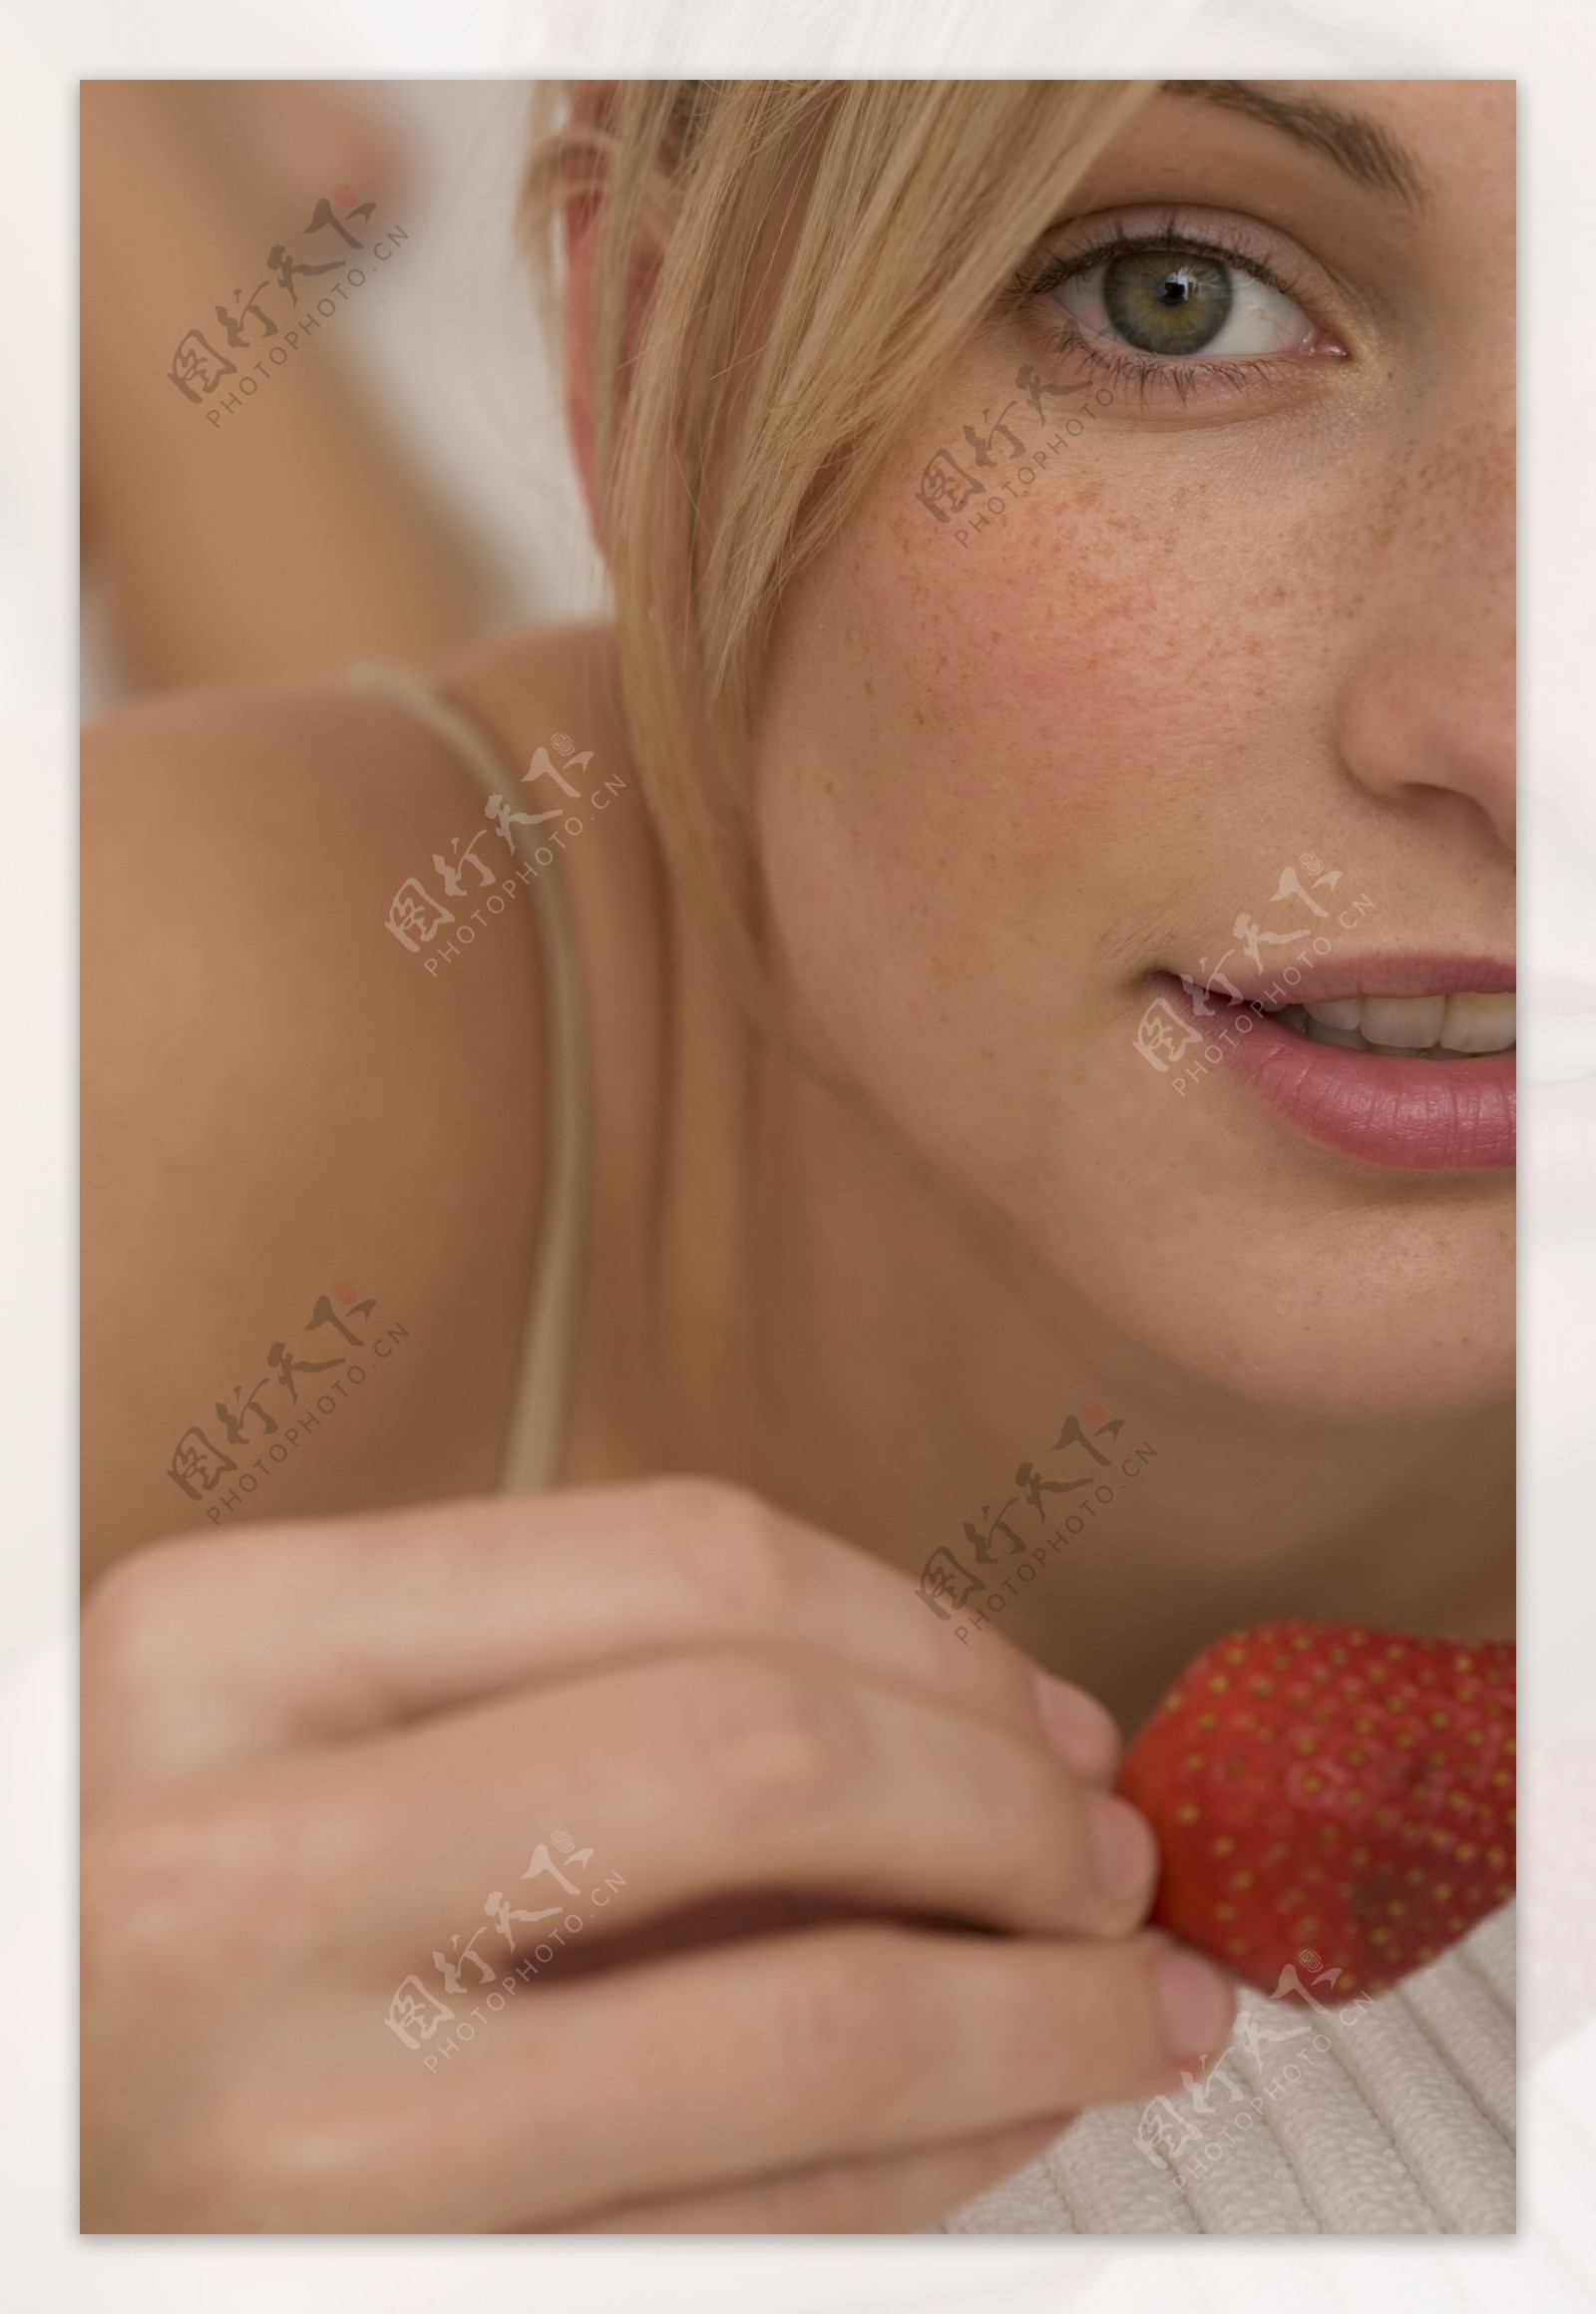 拿着草莓的女人图片